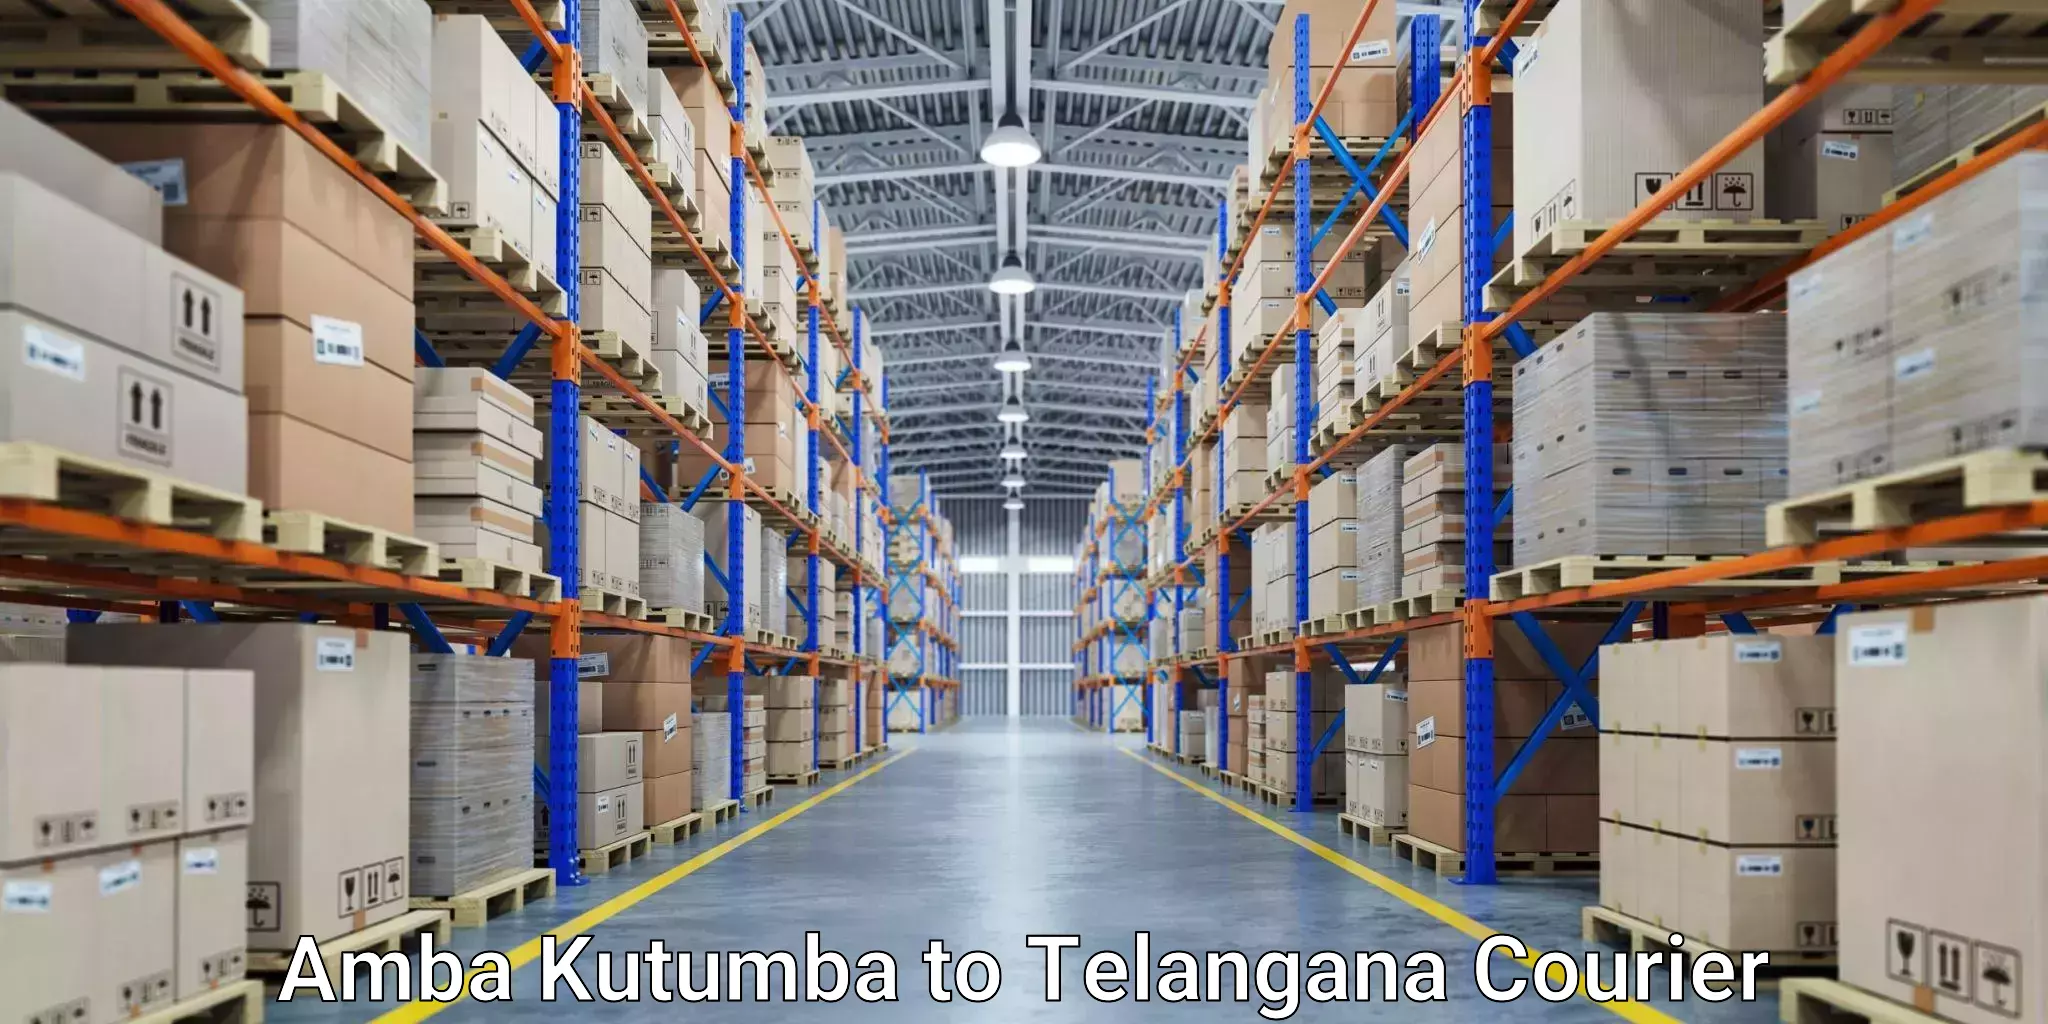 Optimized shipping services Amba Kutumba to Sikanderguda